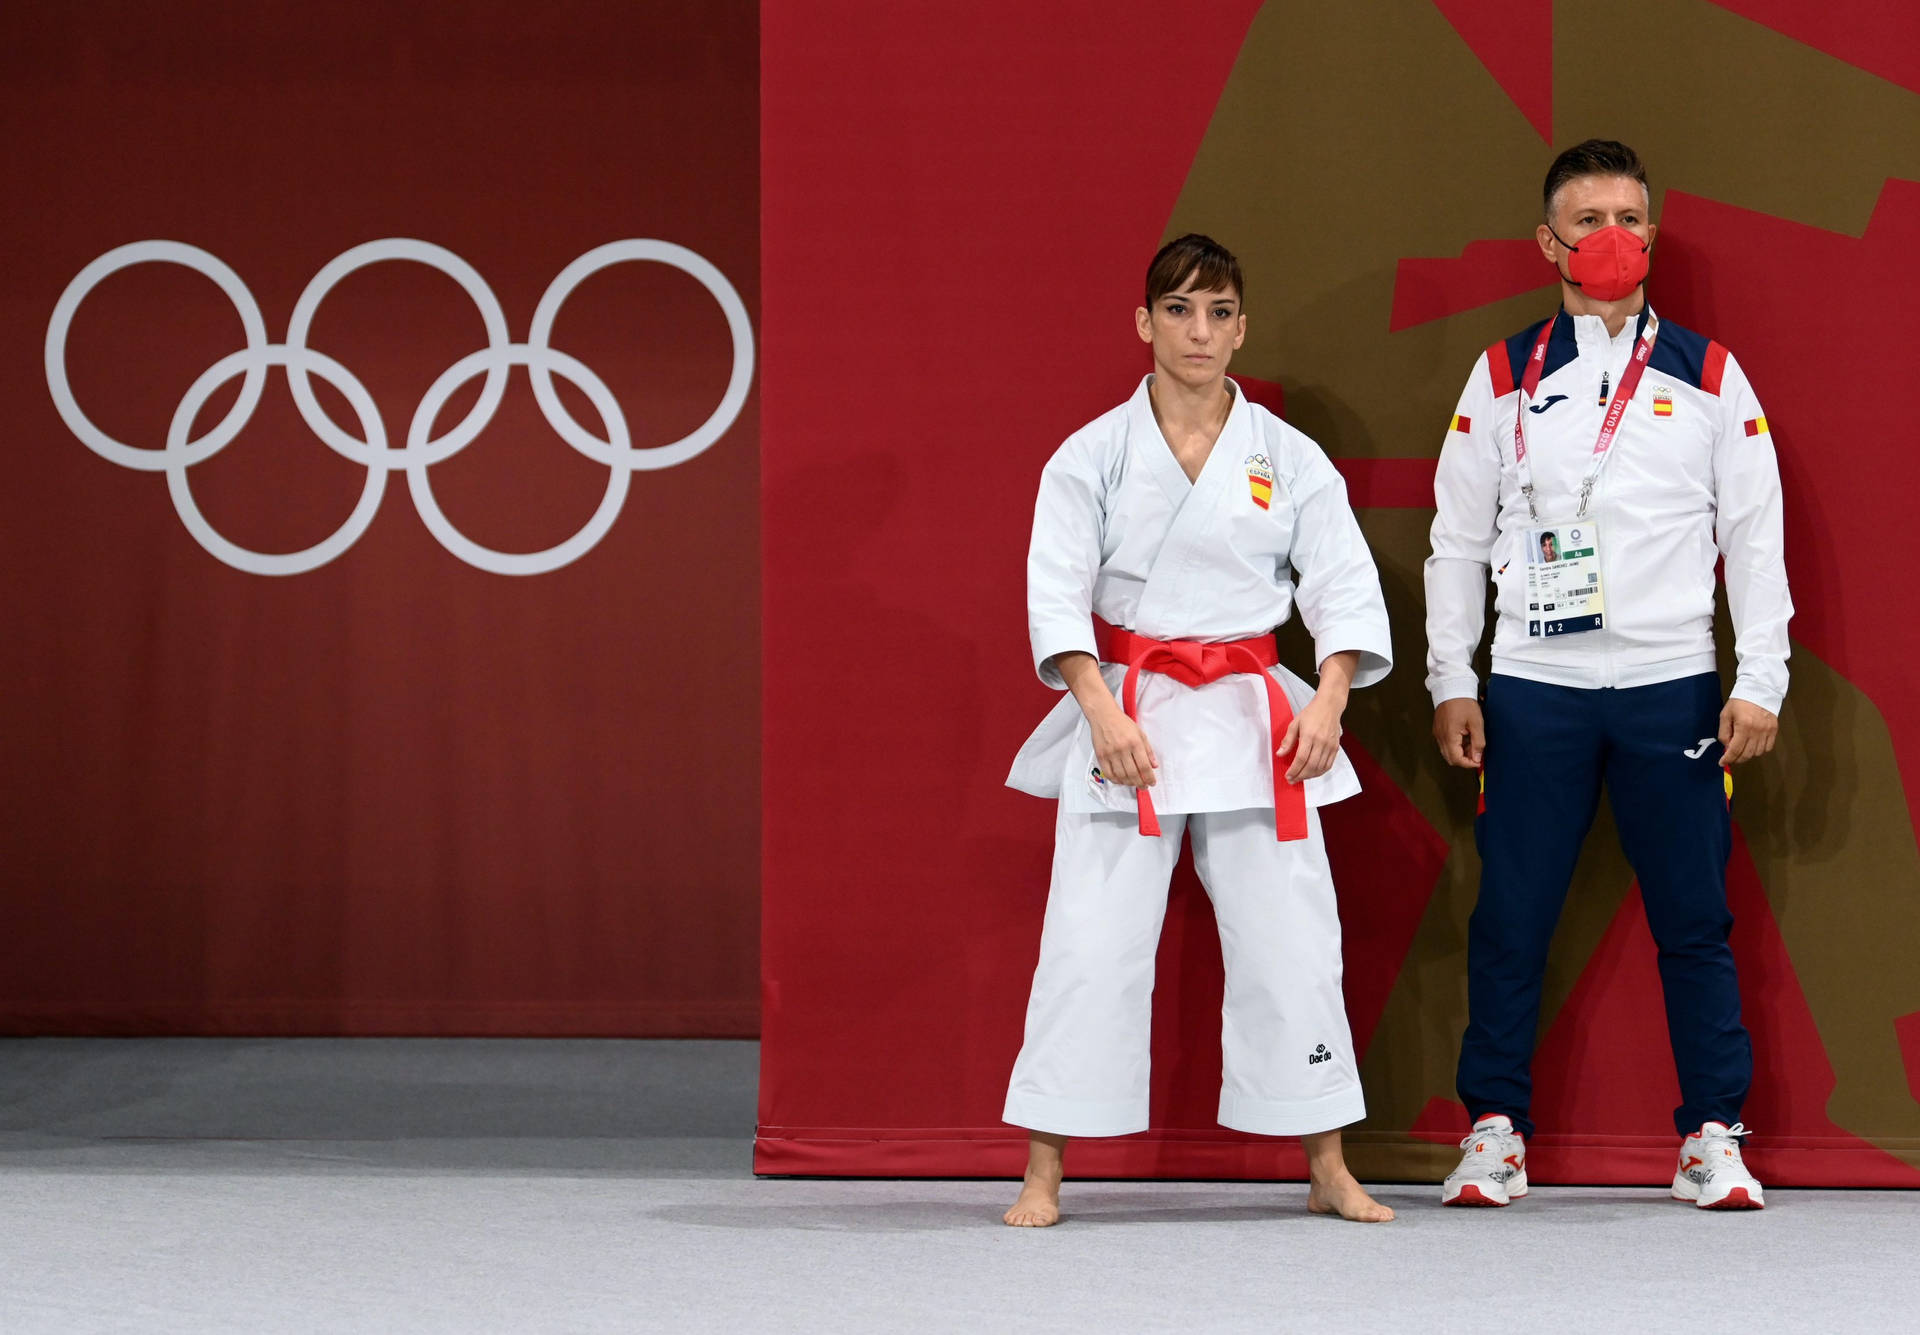 Karate Kid og Coach ved Olympiske Lege. Wallpaper